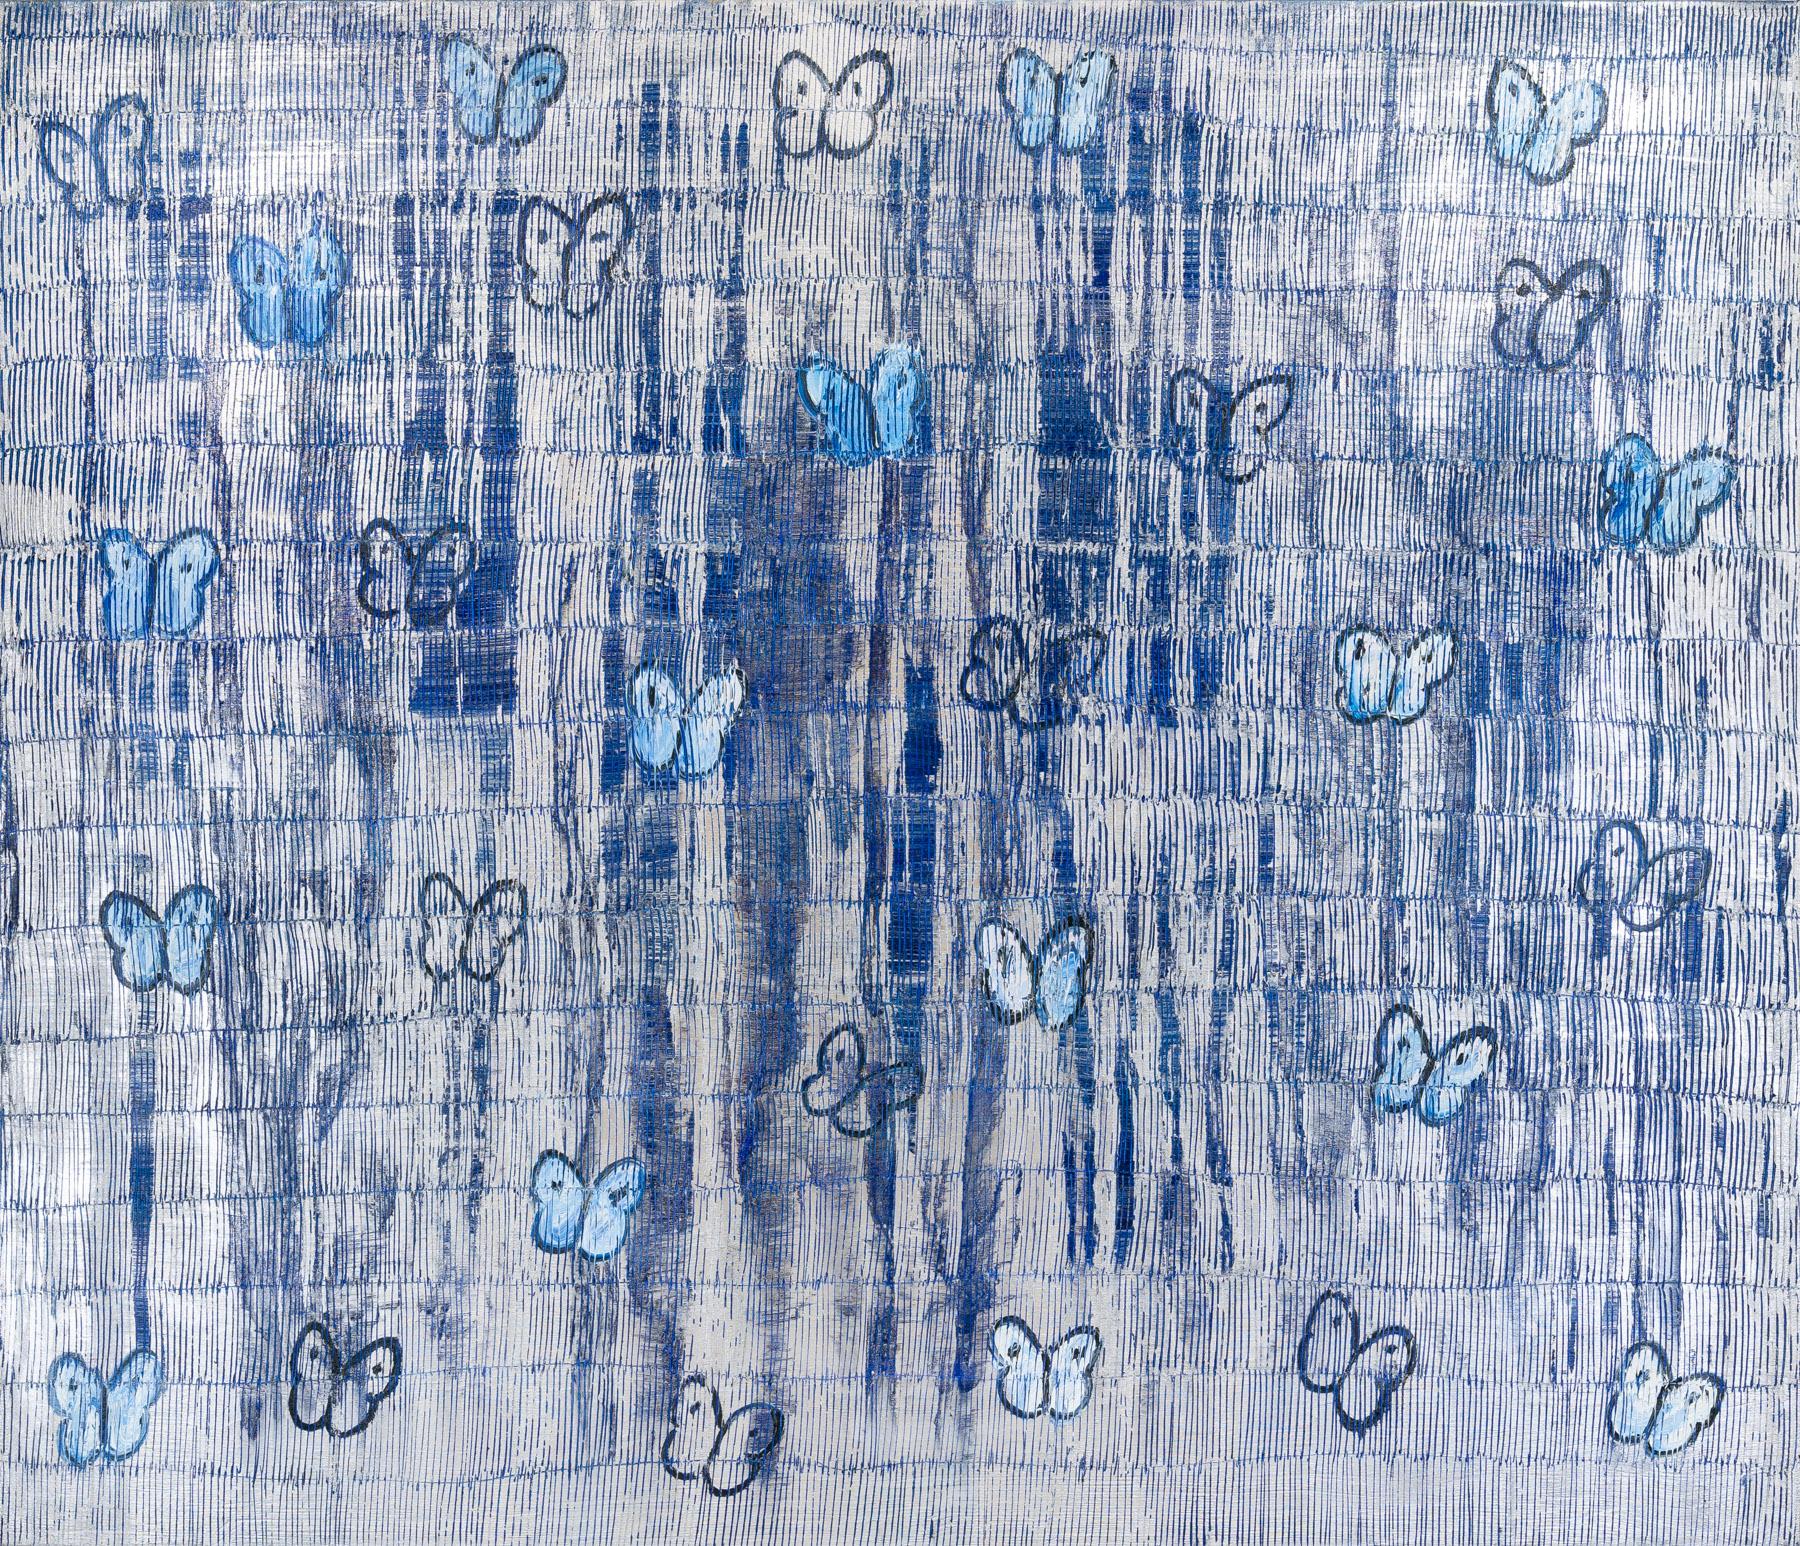 Hunt Slonem "Ascension Rain Storm" Blaue Schmetterlinge
Schwarz umrandete silberne und blaue Schmetterlinge auf einem hellblauen geätzten silbernen und dunkelblauen metallischen Hintergrund.

Ungerahmt: 72 x 84 Zoll
*Gemälde ist gerahmt - Bitte